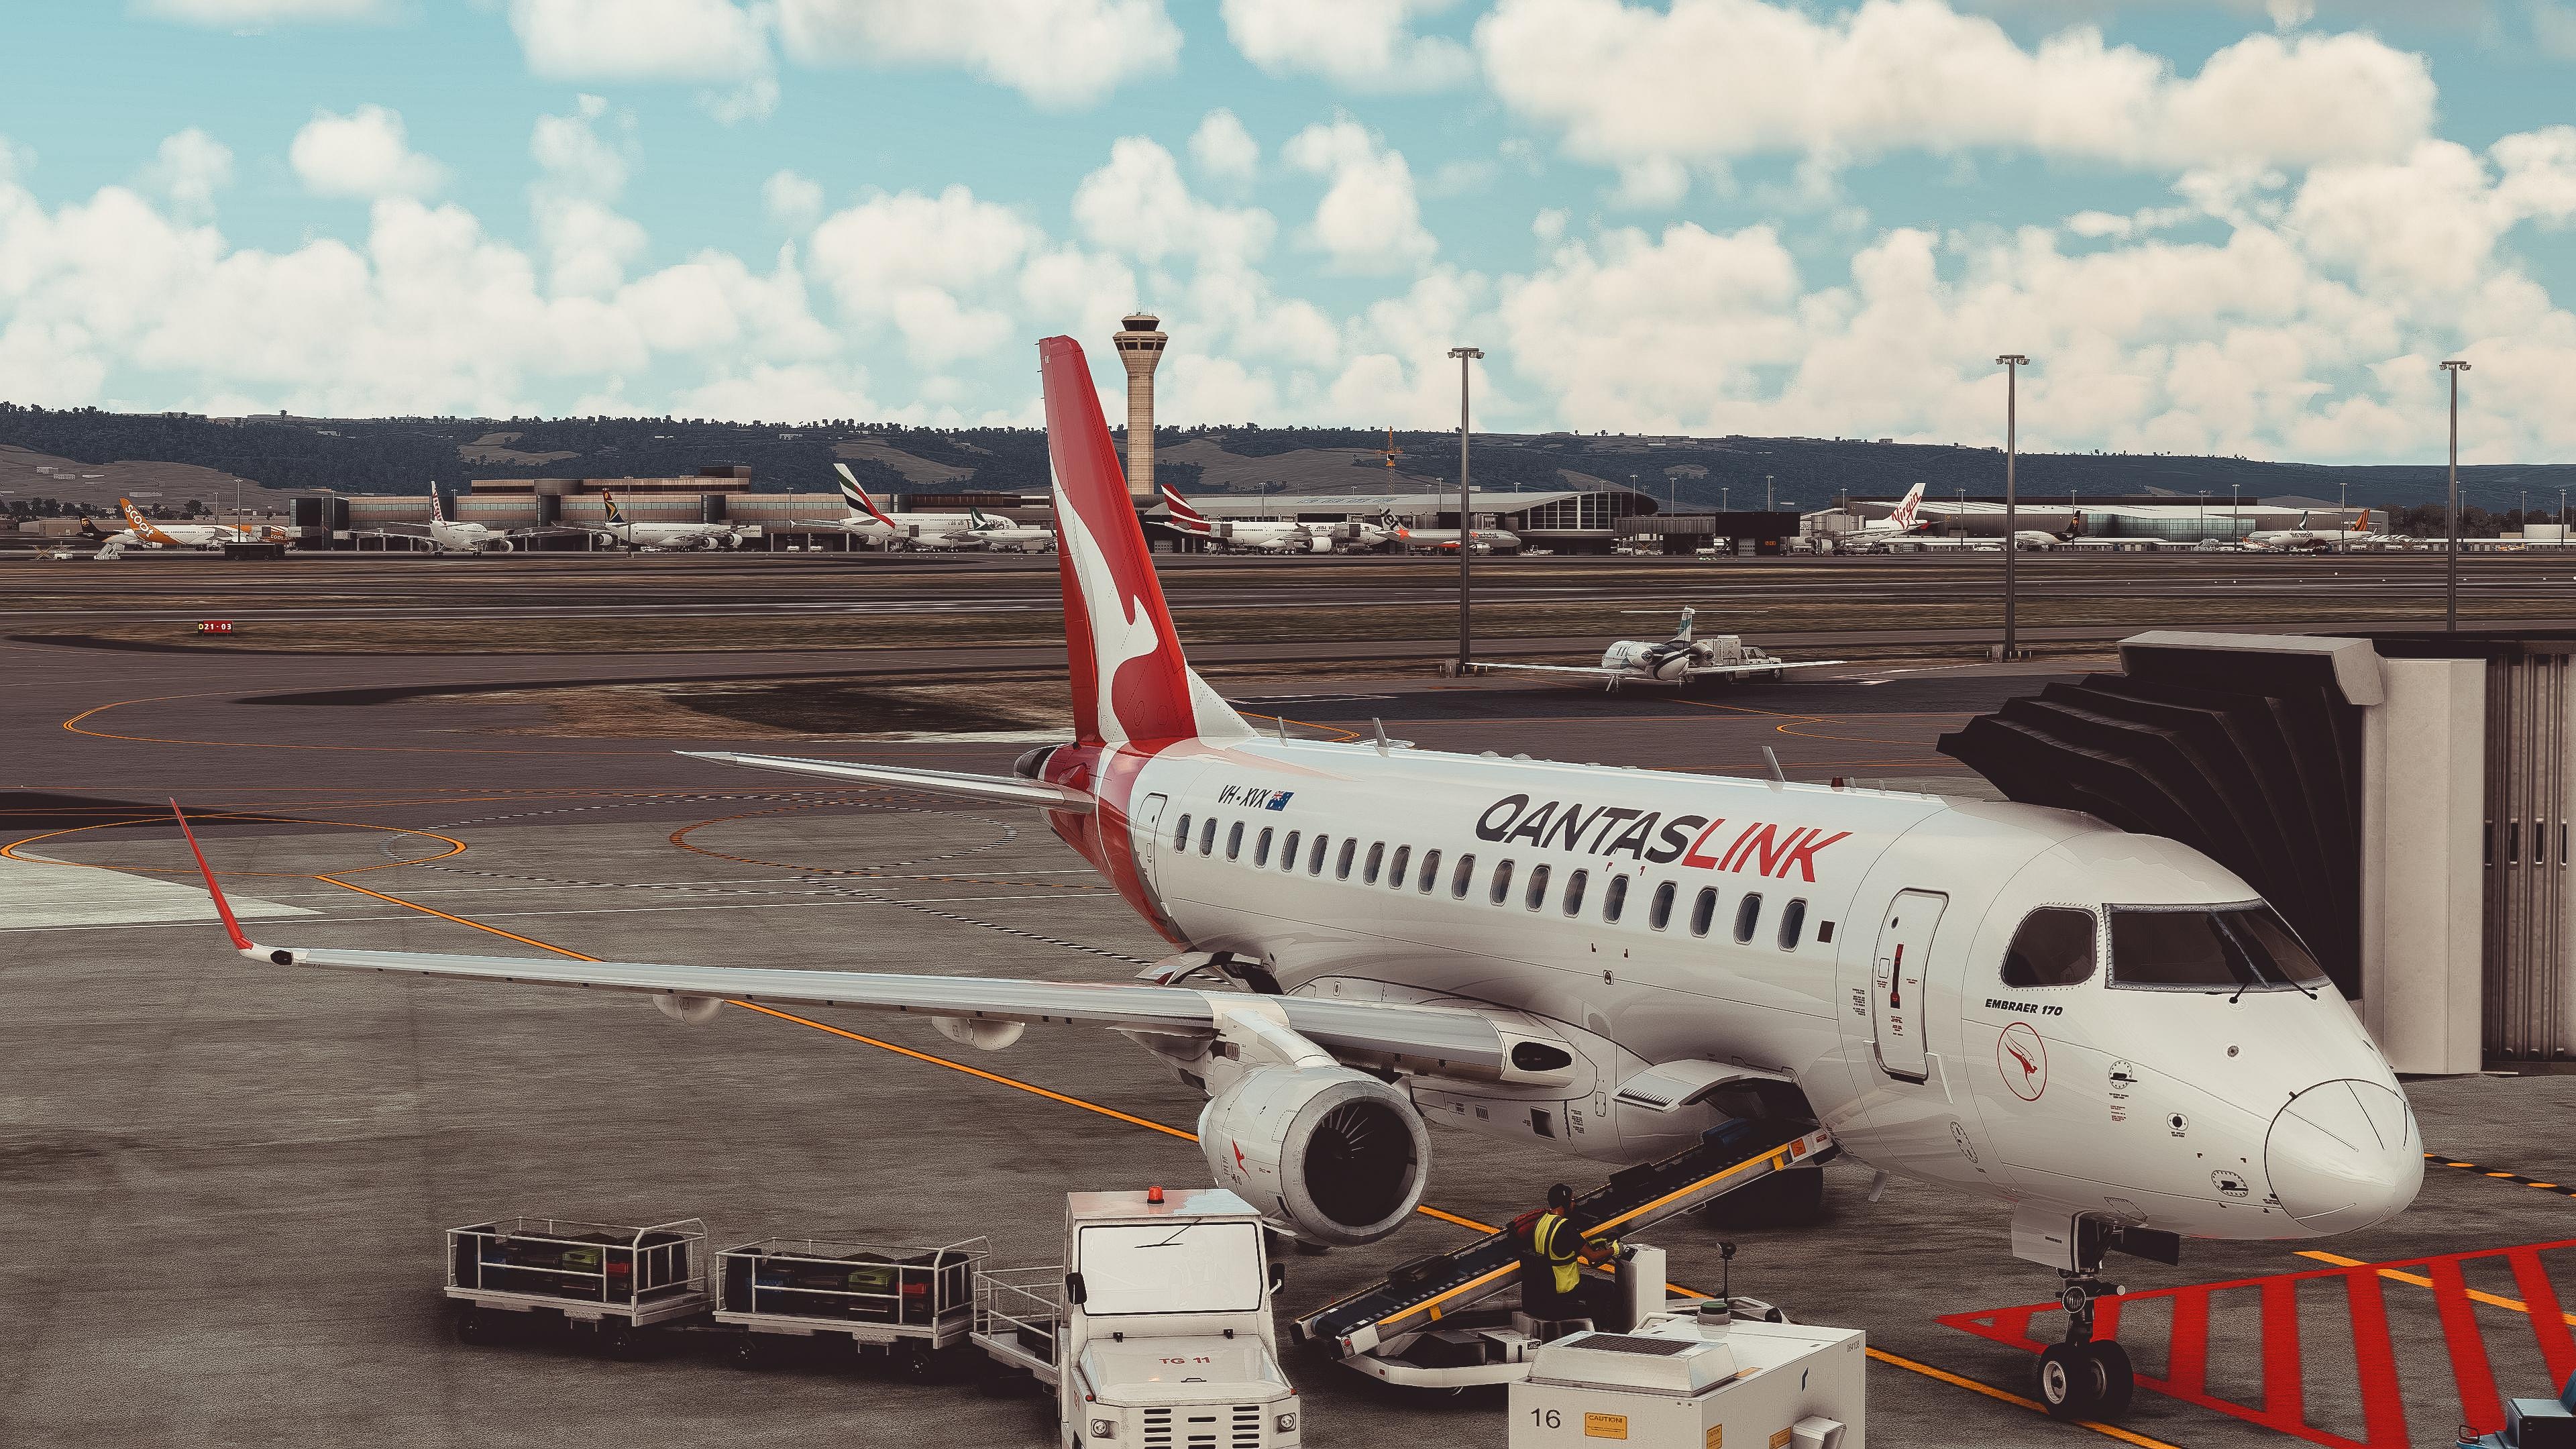 Embraer 170, Qantaslink, Taxiing at Perth Airport, Microsoft Flight Simulator, 3840x2160 4K Desktop